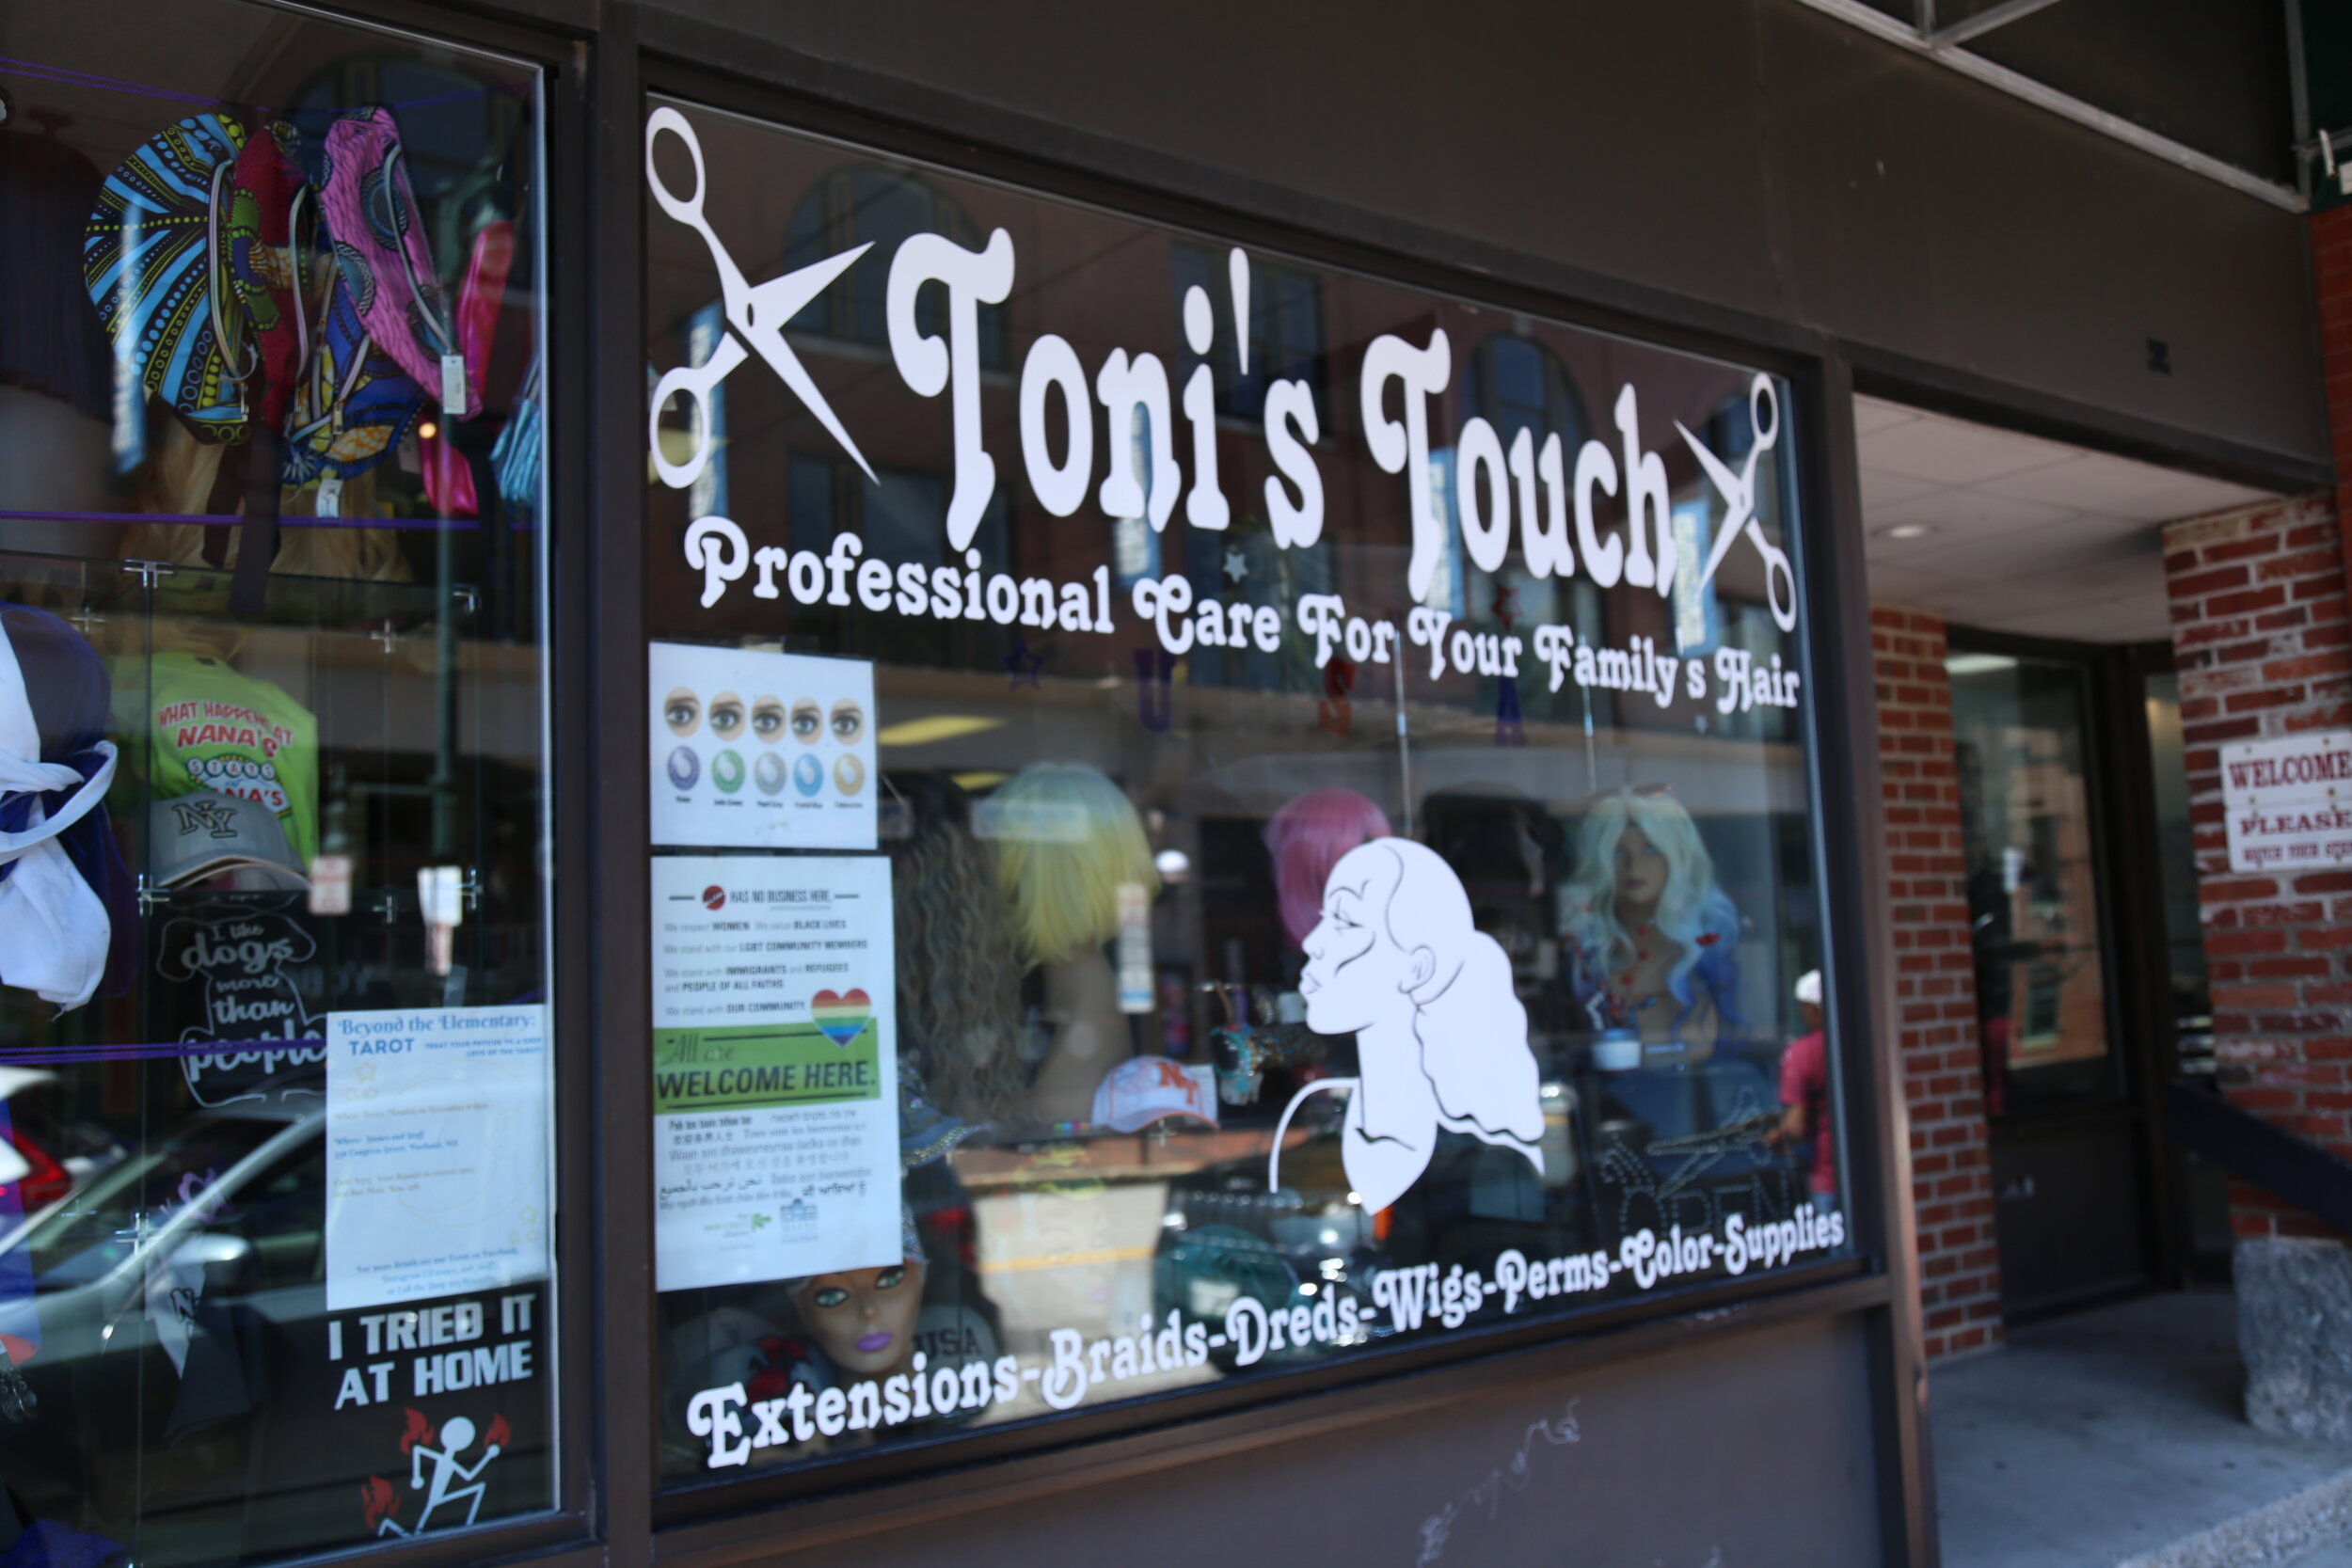 Toni's Touch Salon